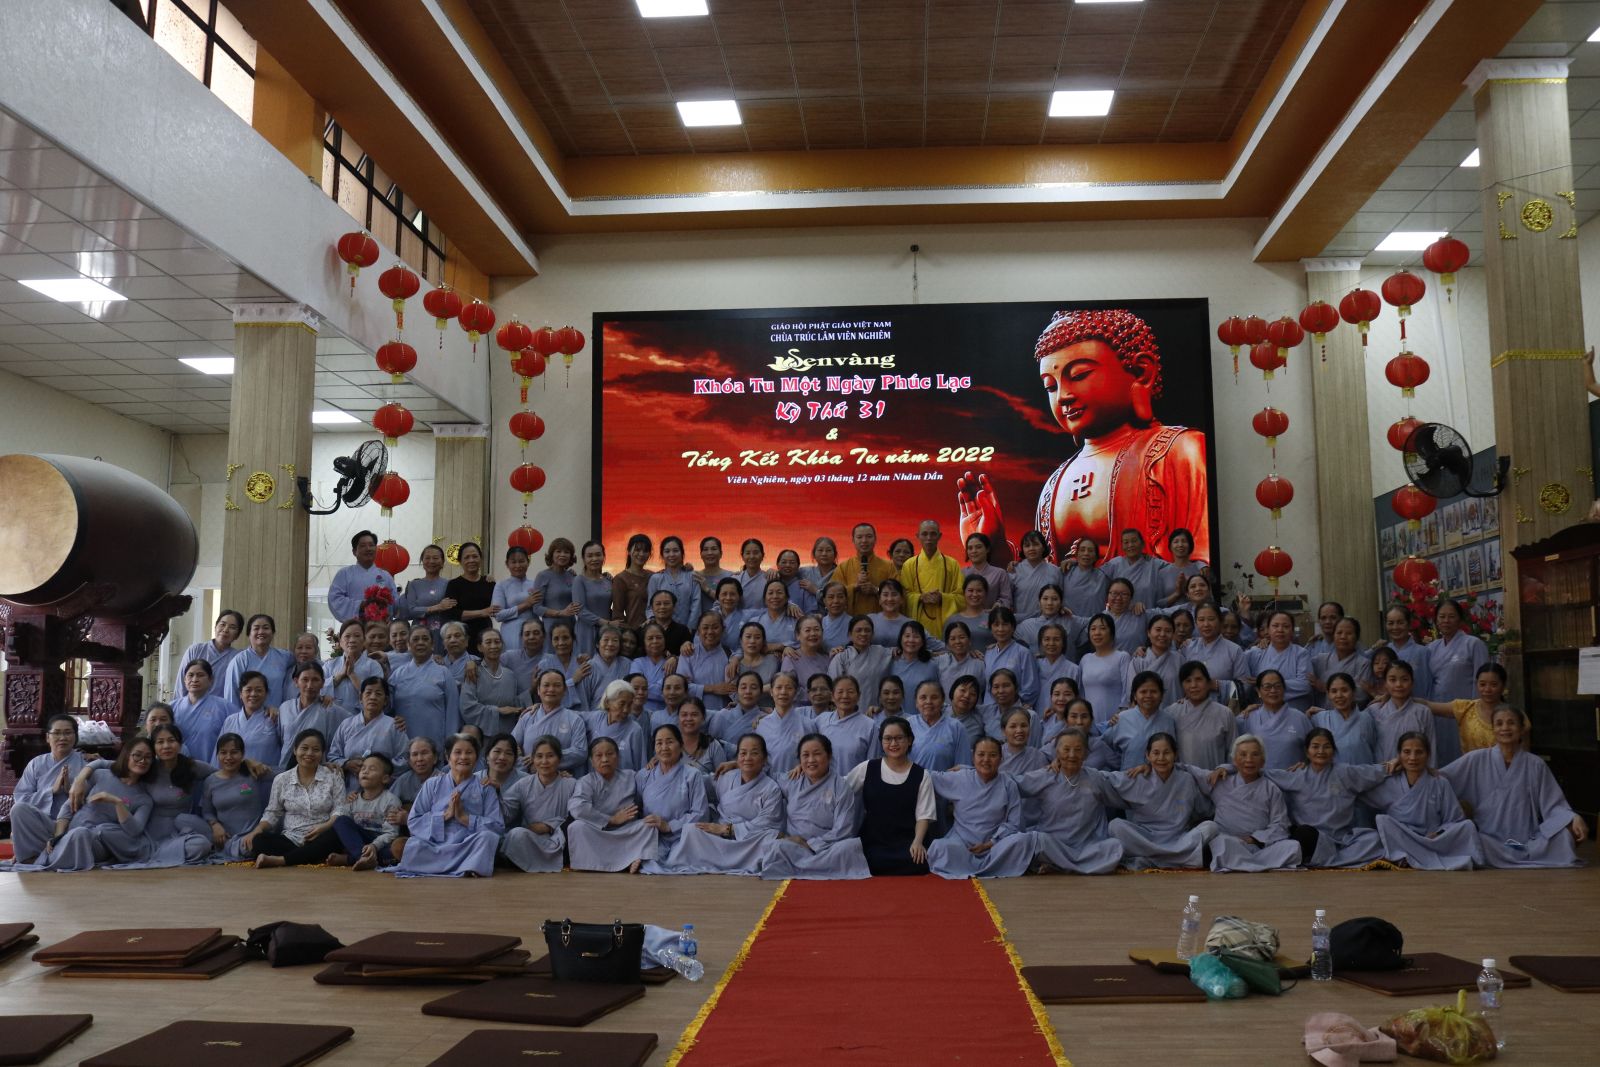 Đồng Nai: Lễ tổng kết khóa tu đạo tràng “Một Ngày Phúc Lạc” năm 2022 tại chùa Trúc Lâm Viên Nghiêm